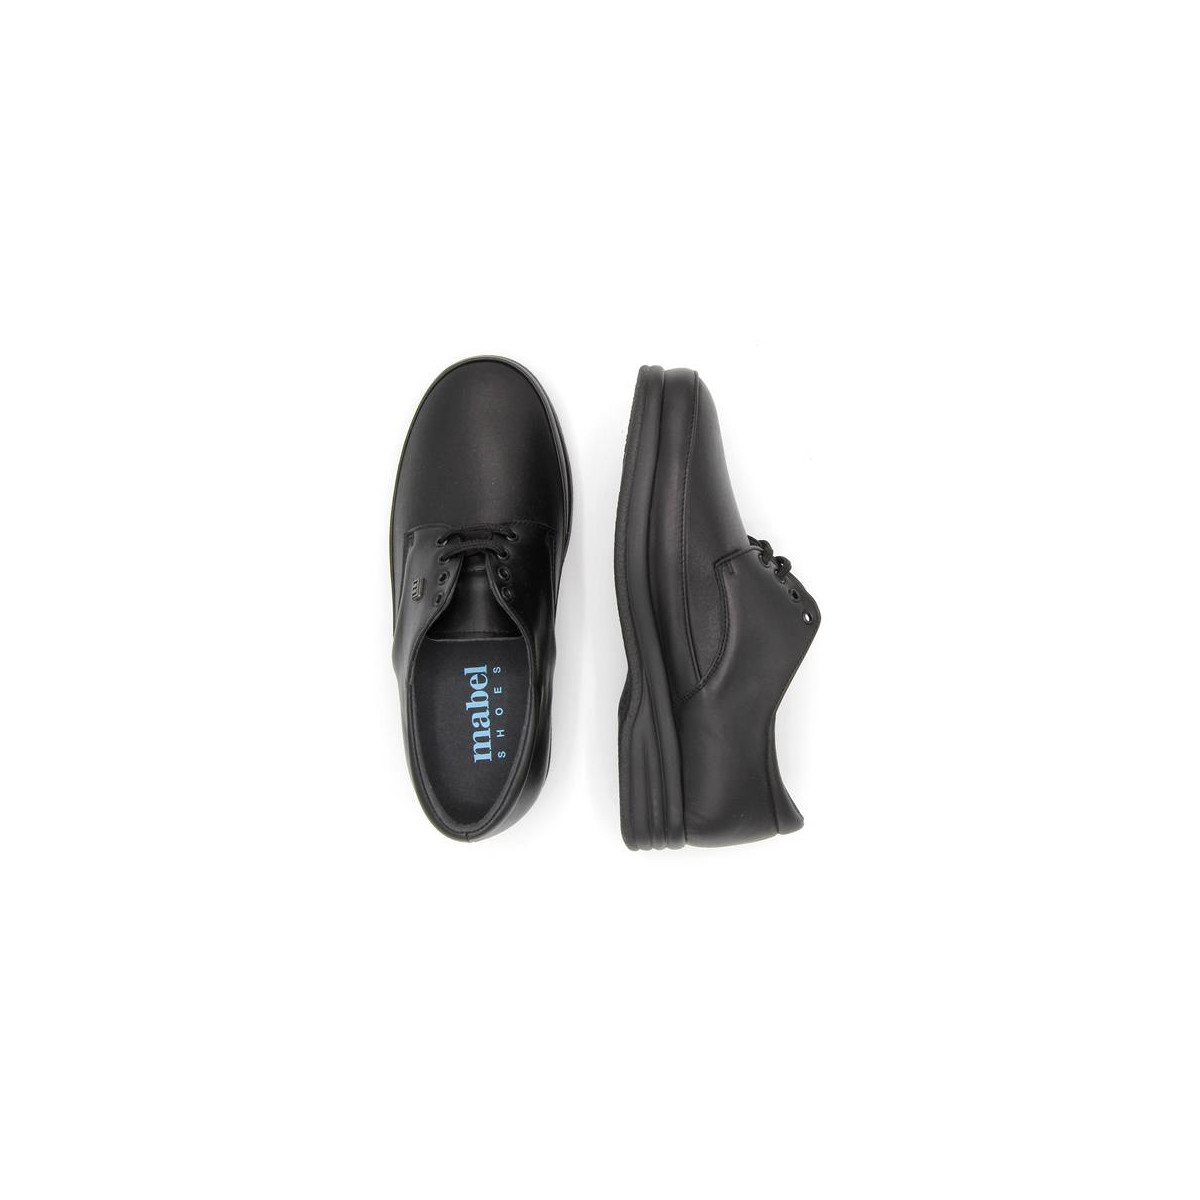 Chaussures pieds sensibles en cuir mat à lacets - Noir - Mabel Shoes